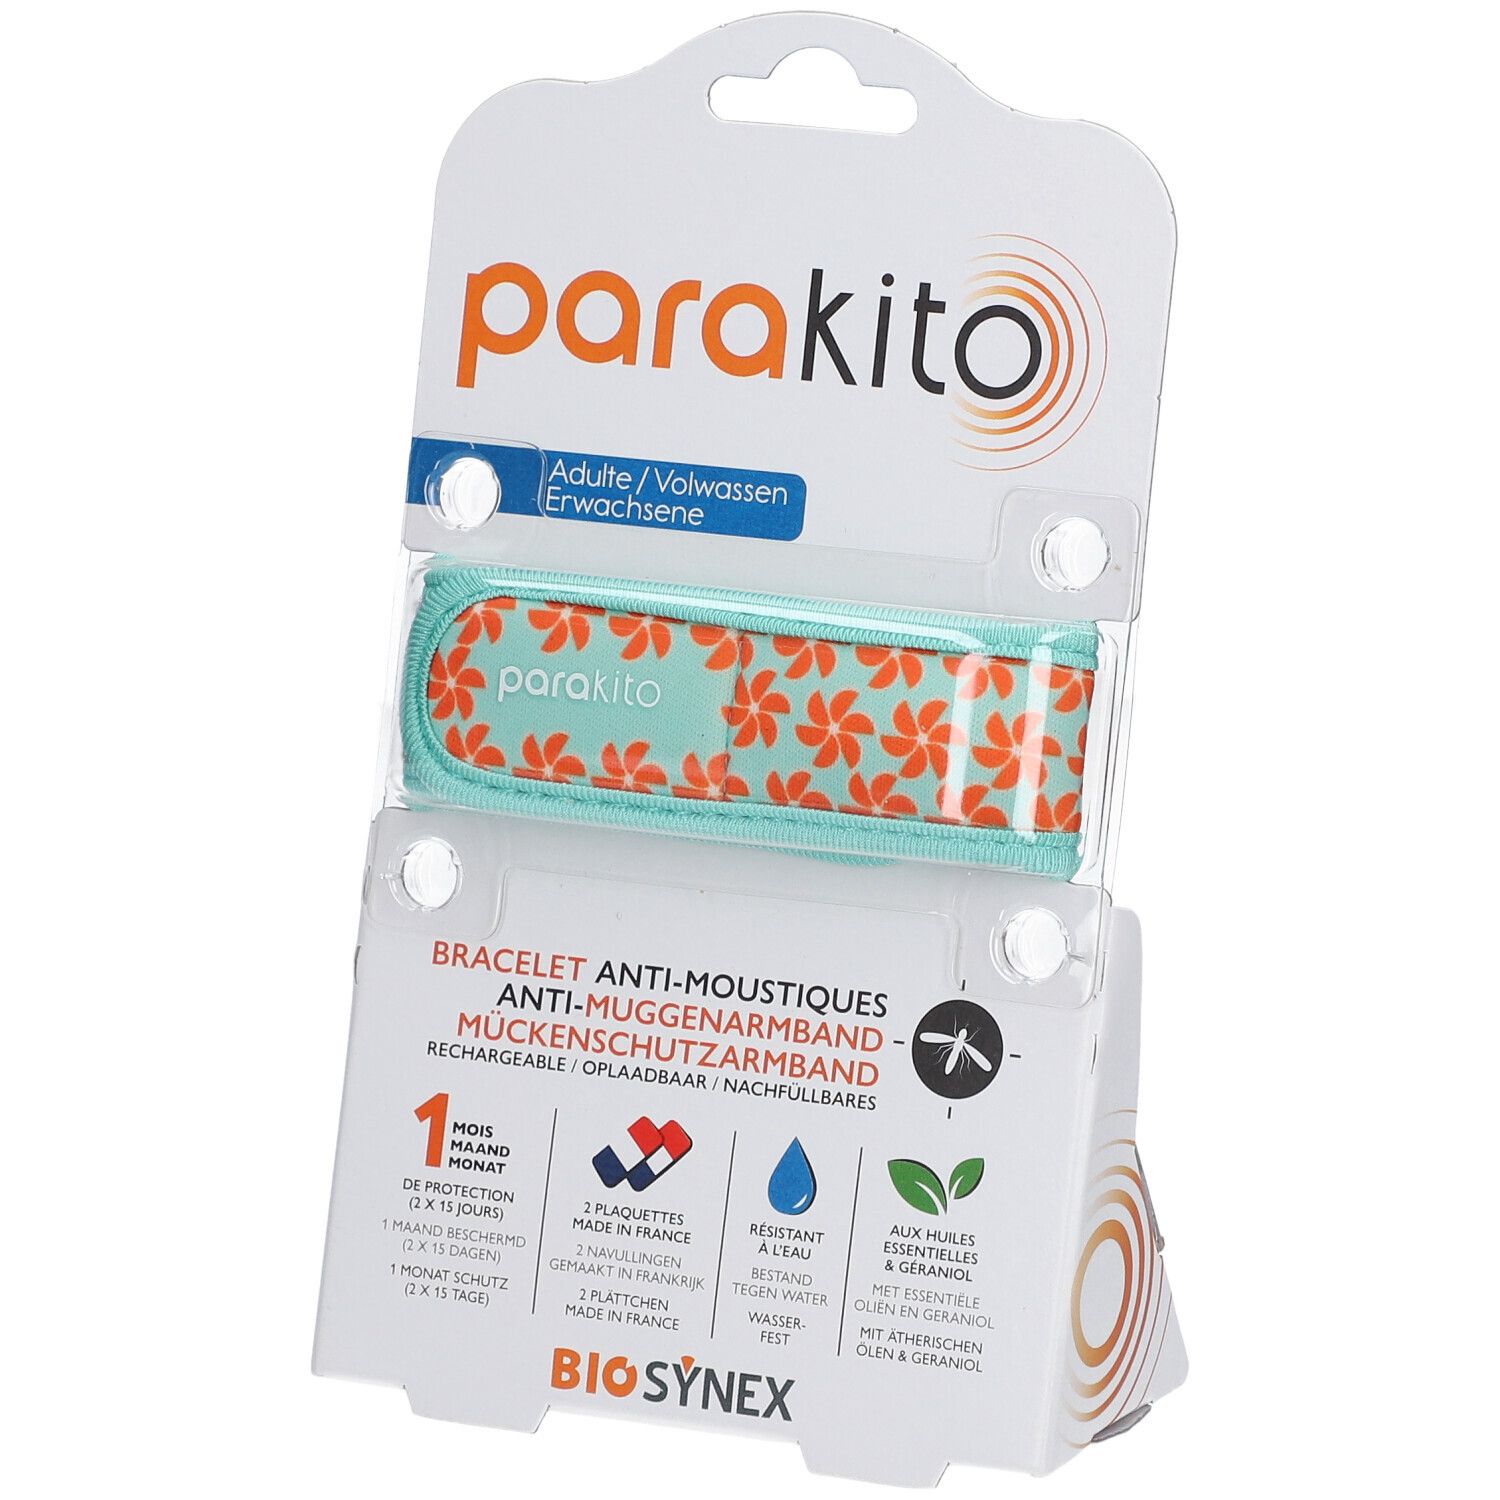 ParaKito Bracelet Anti-Moustiques Adulte Étoiles 1 bracelet(s)